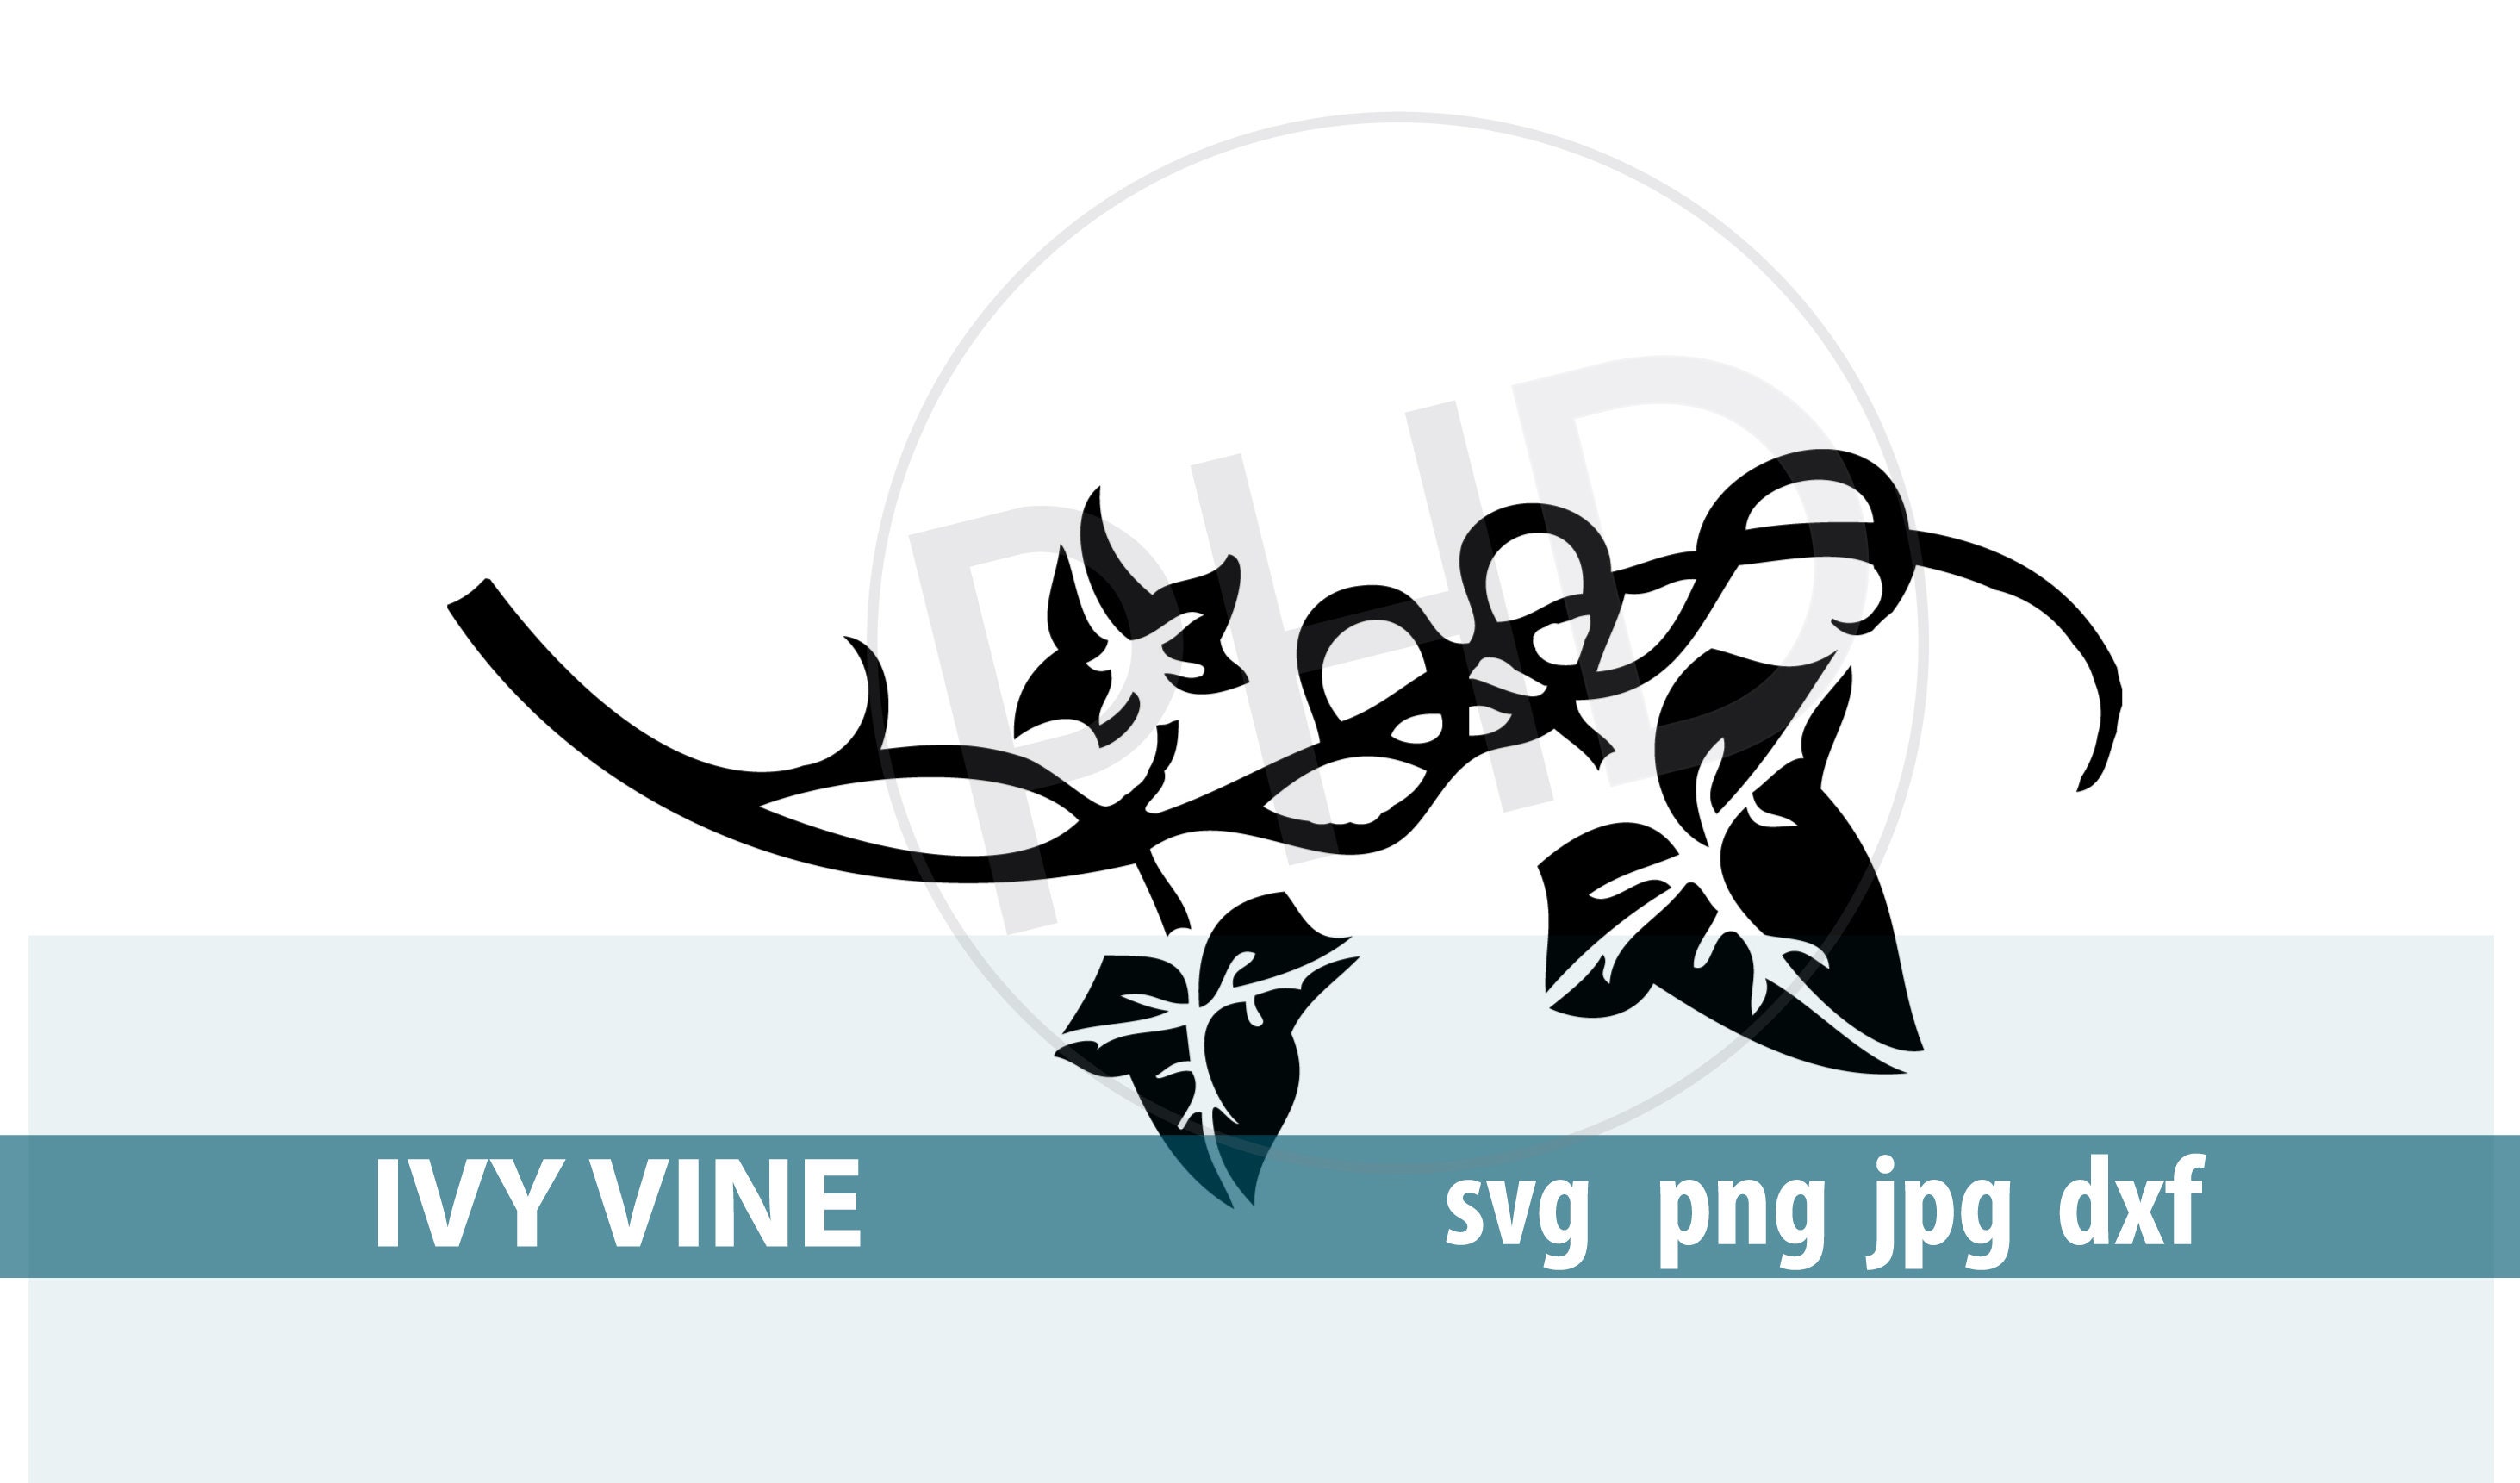 Download IVY LEAF VINE-Cut or print file-Includes svg png and jpg | Etsy